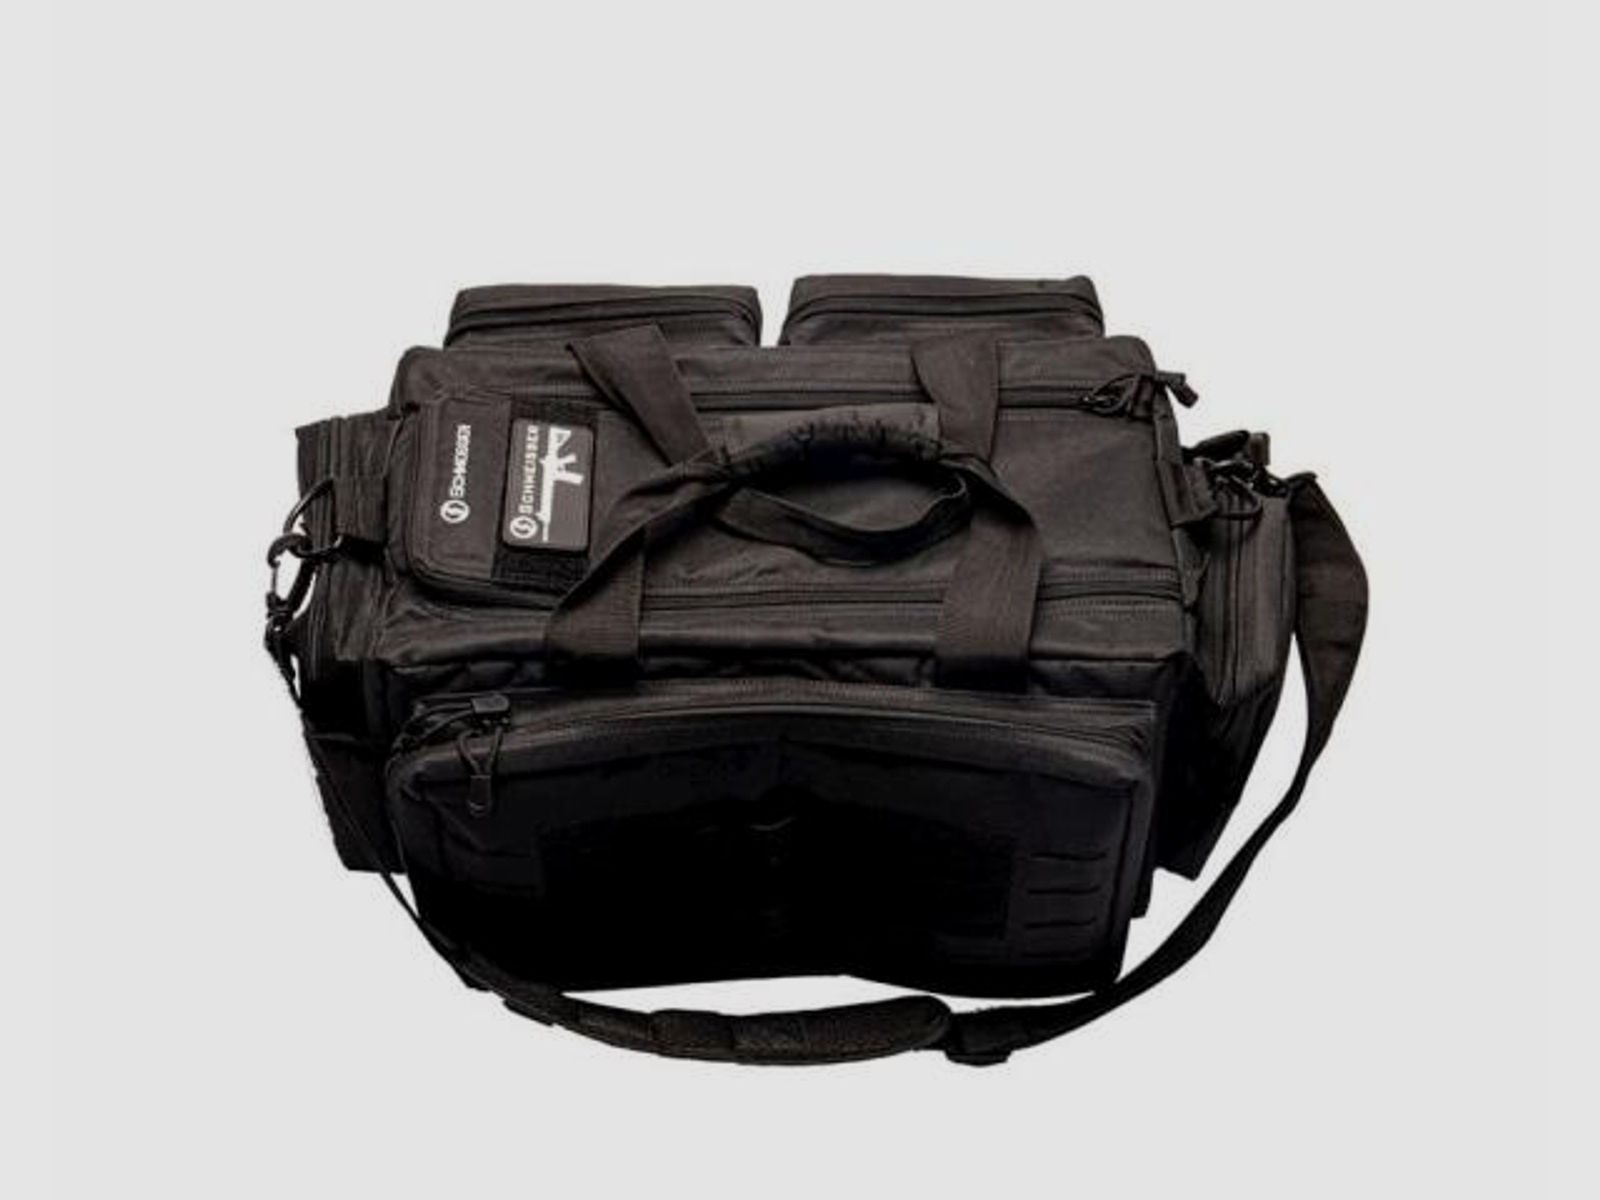 SCHMEISSER Schießsporttasche Range Bag Pistolentasche 61x41x25,4cm schwarz